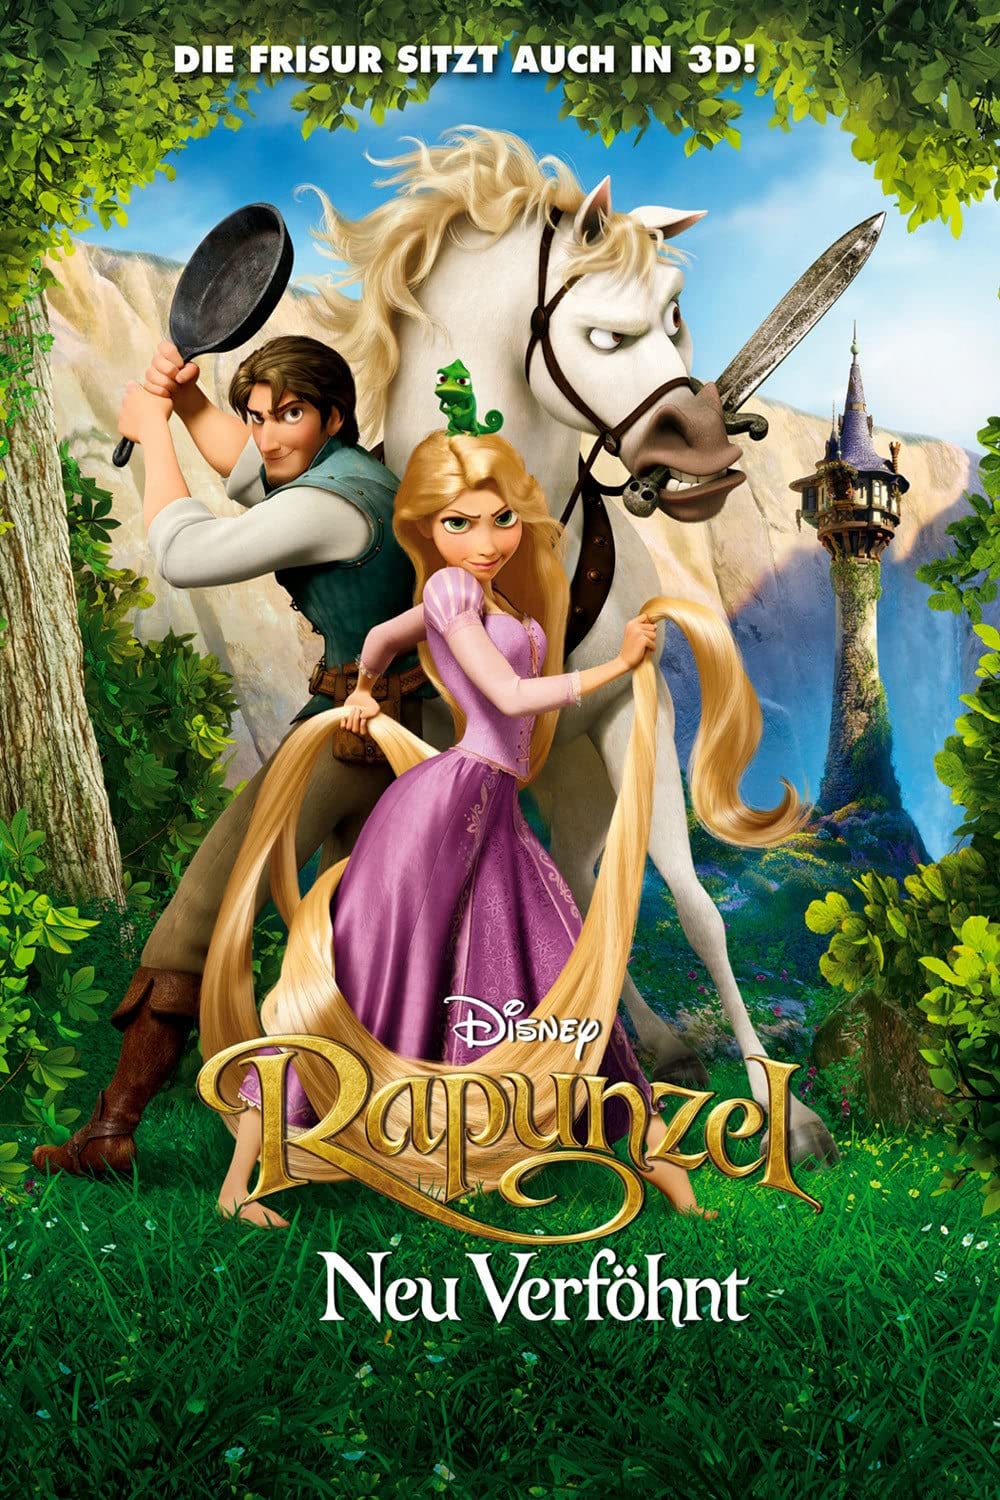 Filmbeschreibung zu Rapunzel - Neu verföhnt